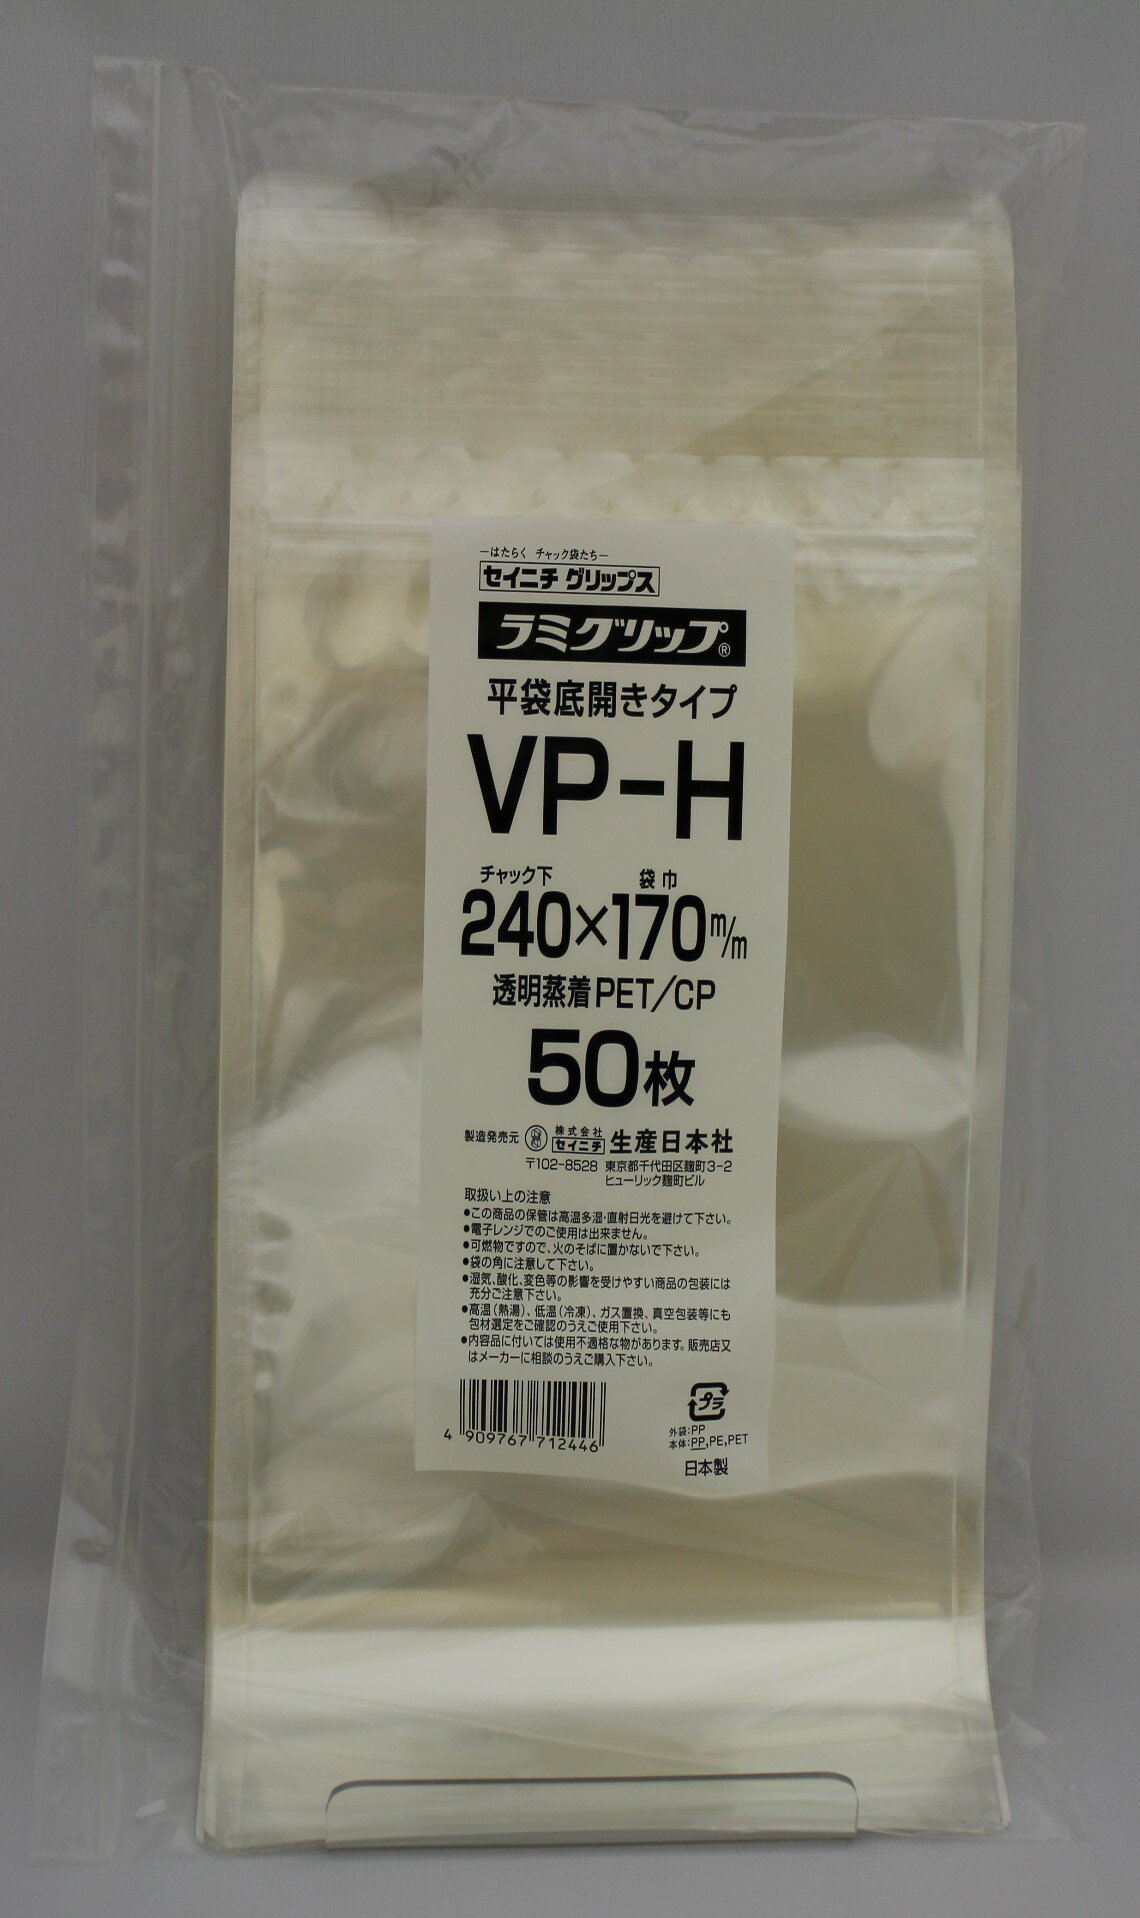 ラミグリップ VP-H 平袋 透明 バリア タイプ チャック付ポリ袋 50枚入 日本製